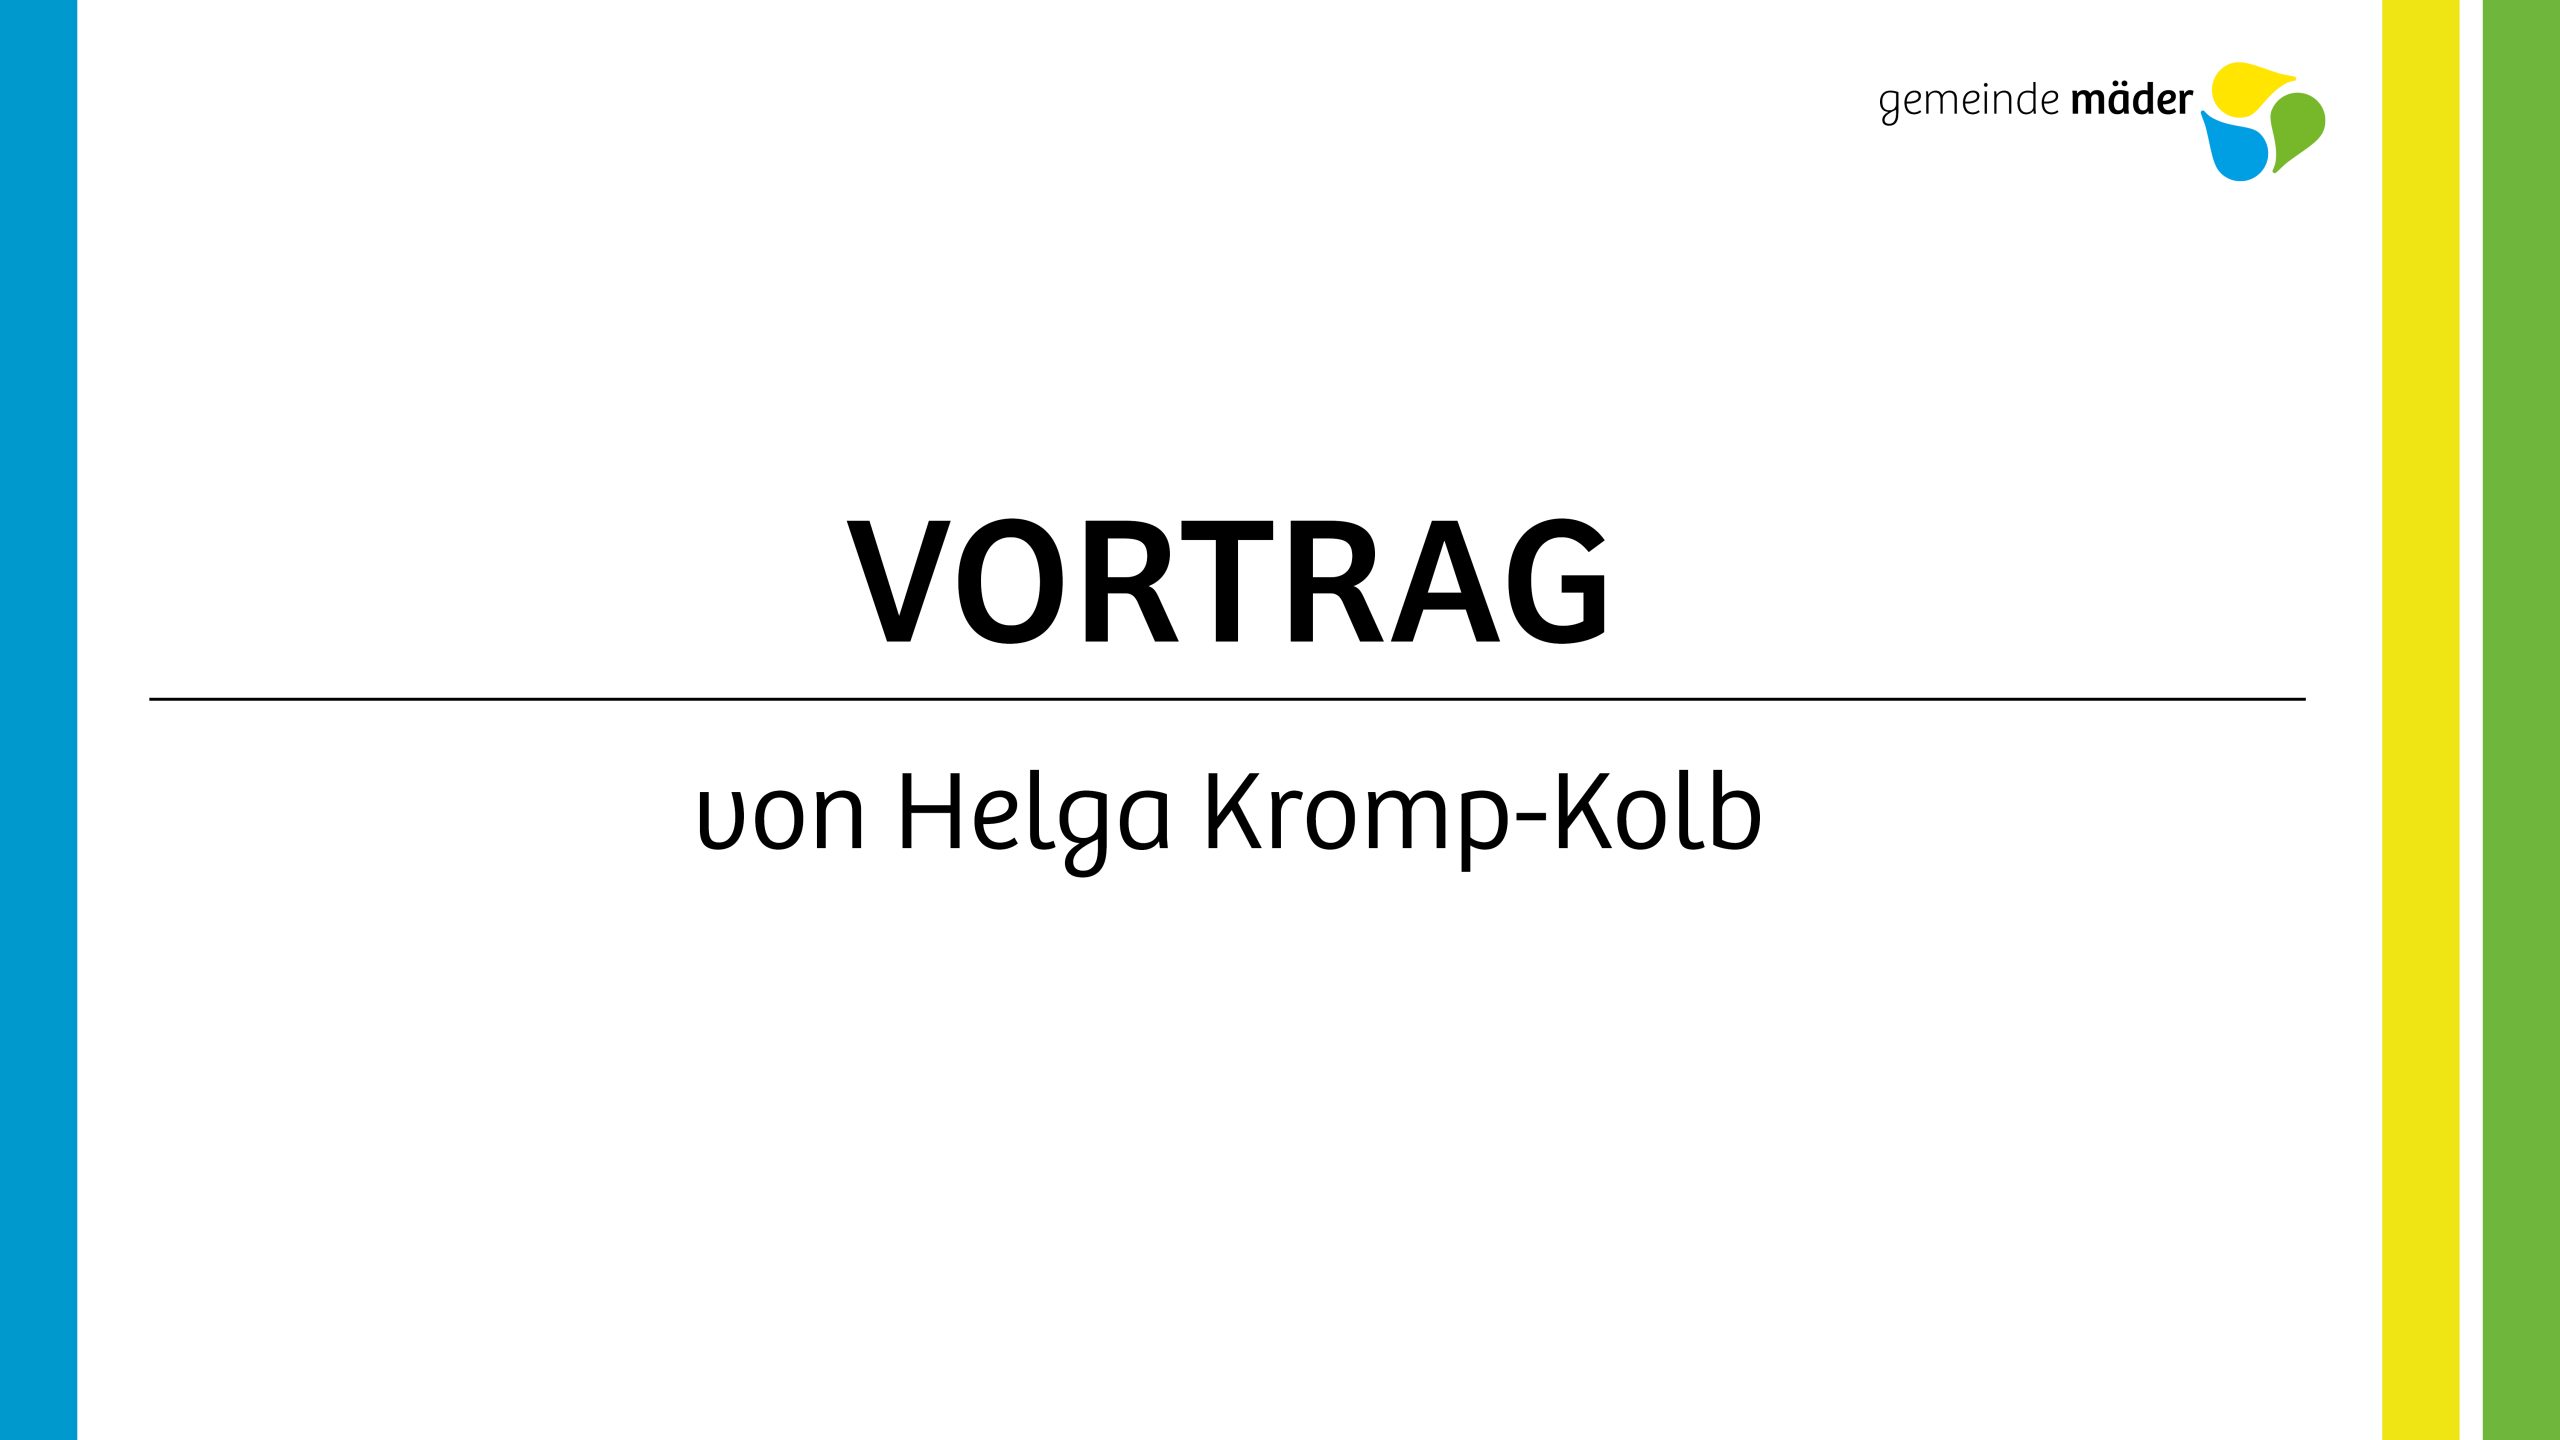 Vortrag von Helga Kromp-Kolb